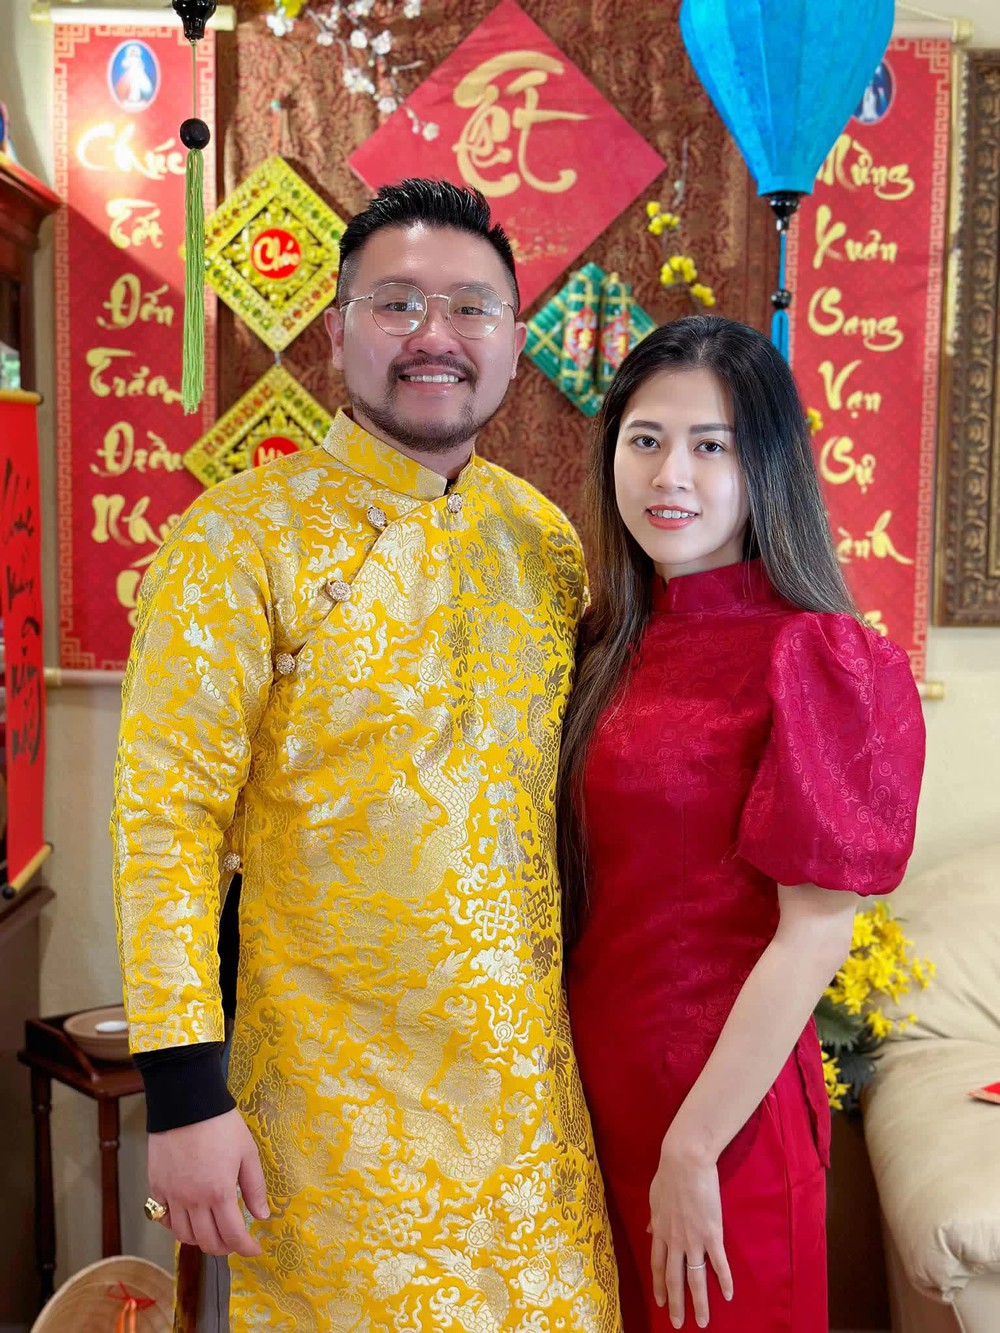 Ông chủ tiệm bánh mỳ ở Mỹ si mê cô gái Việt, vừa gặp 1 tuần đã xin dạm ngõ, cưới xong xây chuỗi cơ ngơi khủng